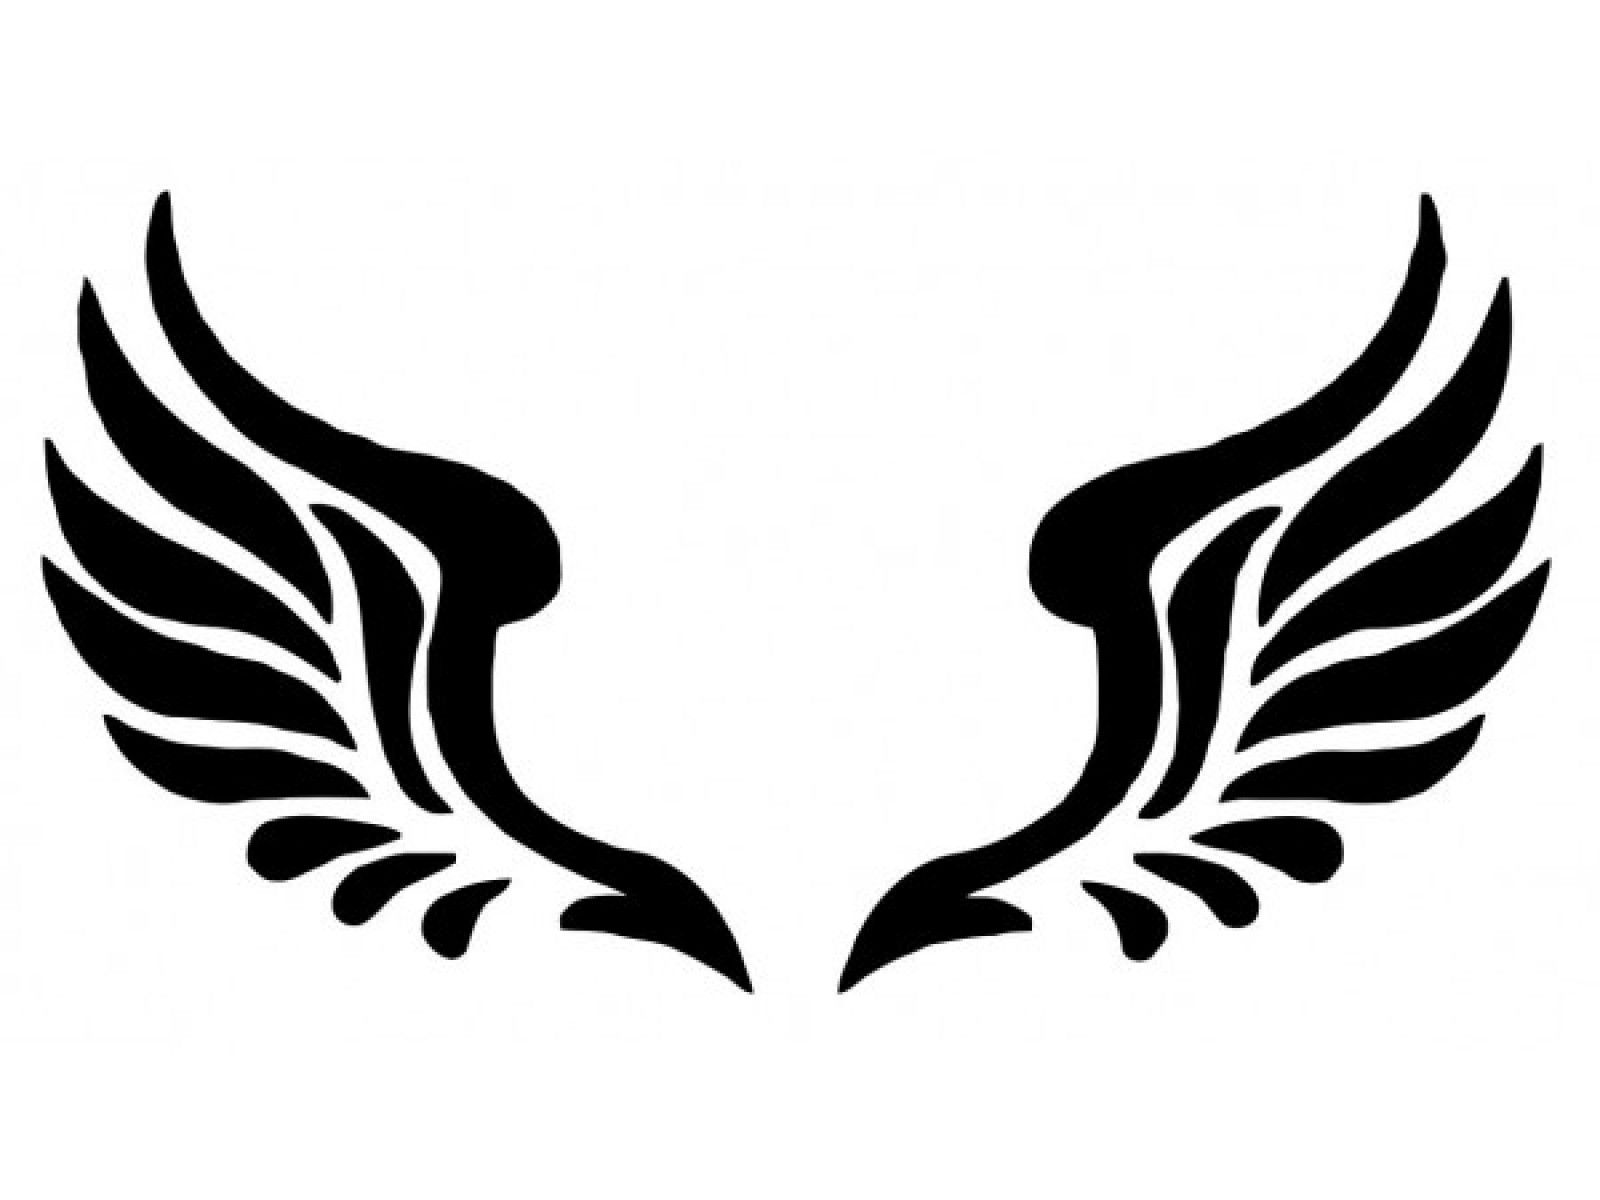 Angel Wings Silhouette Vector at GetDrawings | Free download